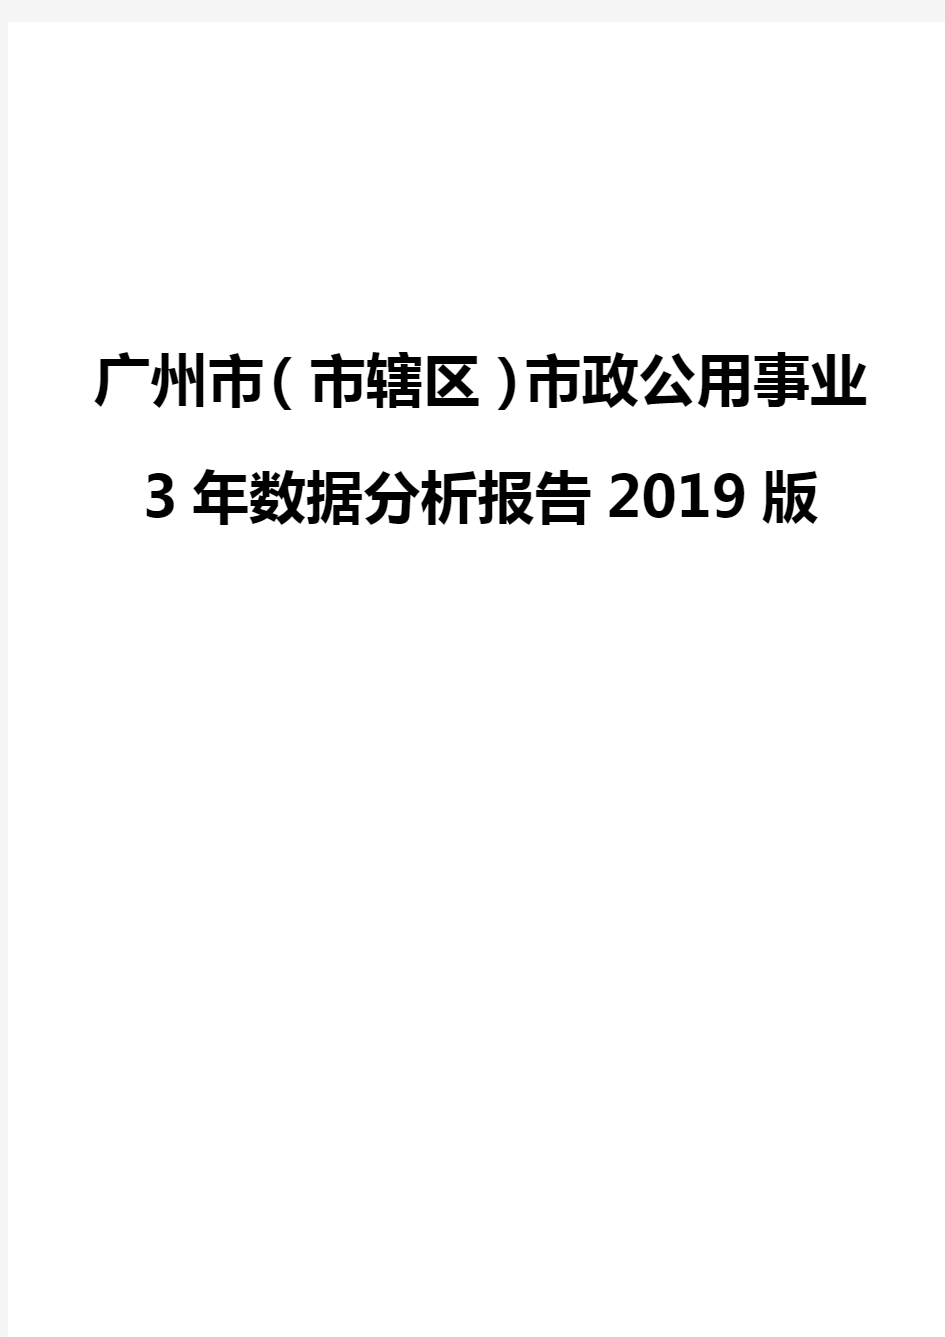 广州市(市辖区)市政公用事业3年数据分析报告2019版